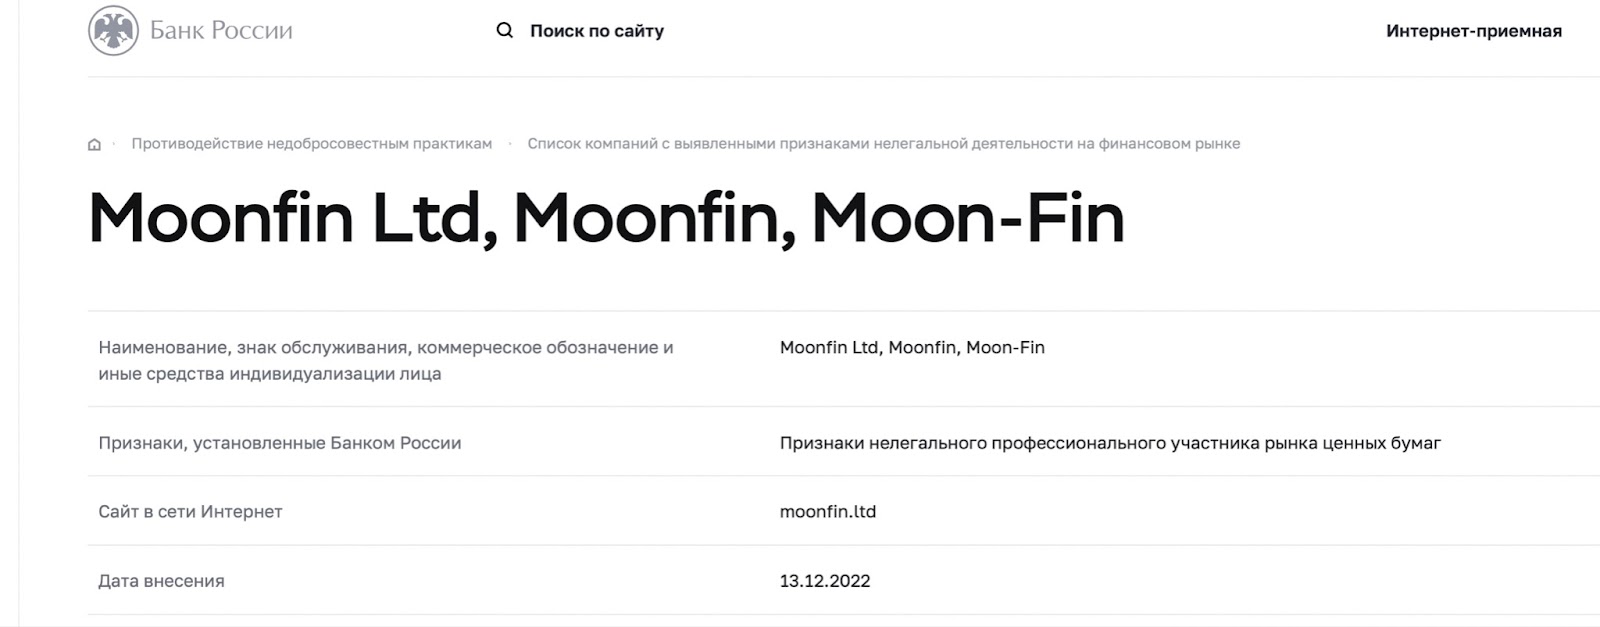 Moon-Fin: отзывы клиентов о работе компании в 2022 году